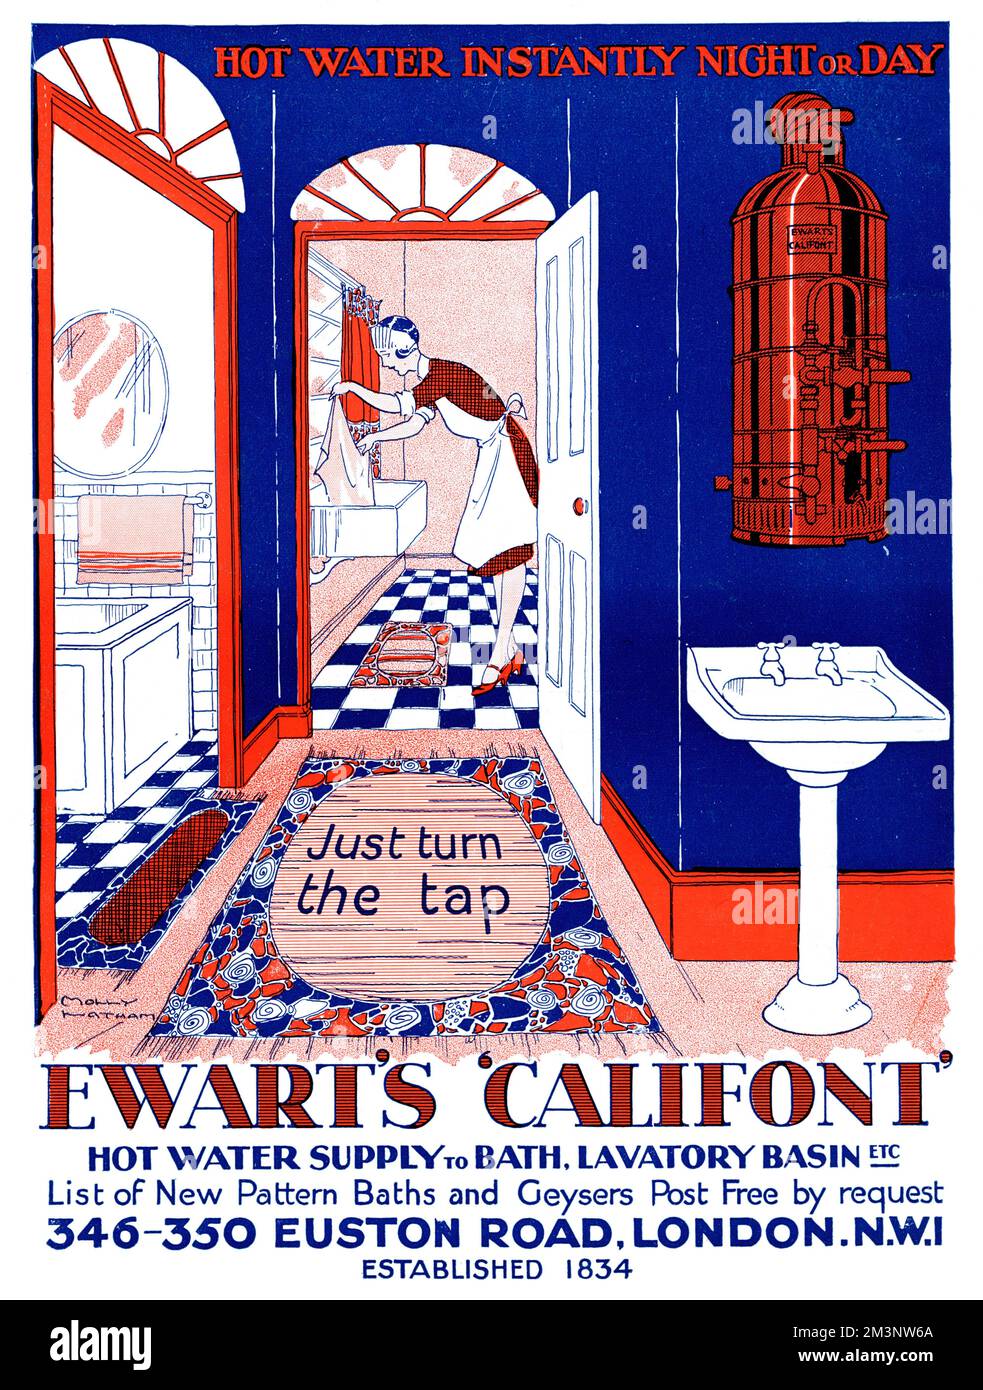 Werbung für Ewart's Califont Heißwasserversorgung, die Ihnen empfiehlt, einfach den Hahn zu drehen, um heißes, fließendes Wasser zu genießen. Neben einem Badezimmer wäscht ein Zimmermädchen in einem großen Butlerwaschbecken. Datum: 1927 Stockfoto